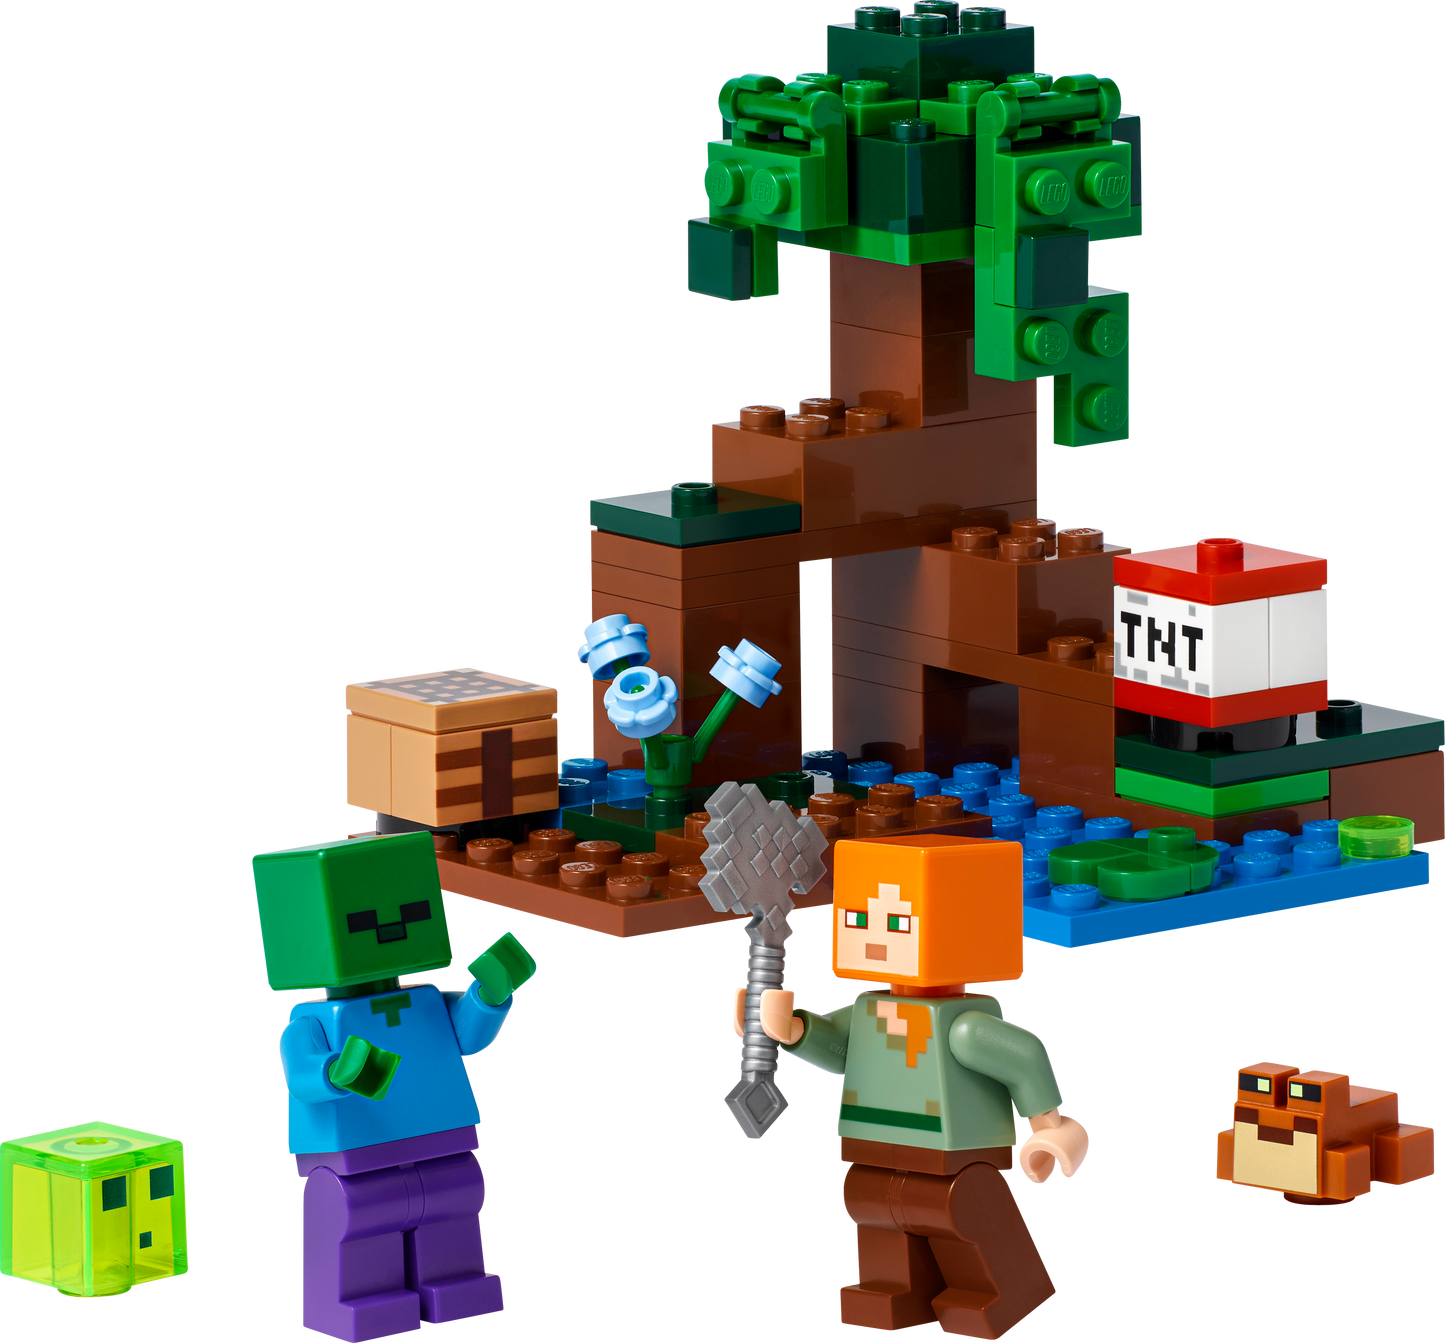 21240 LEGO Minecraft - Avventura nella palude